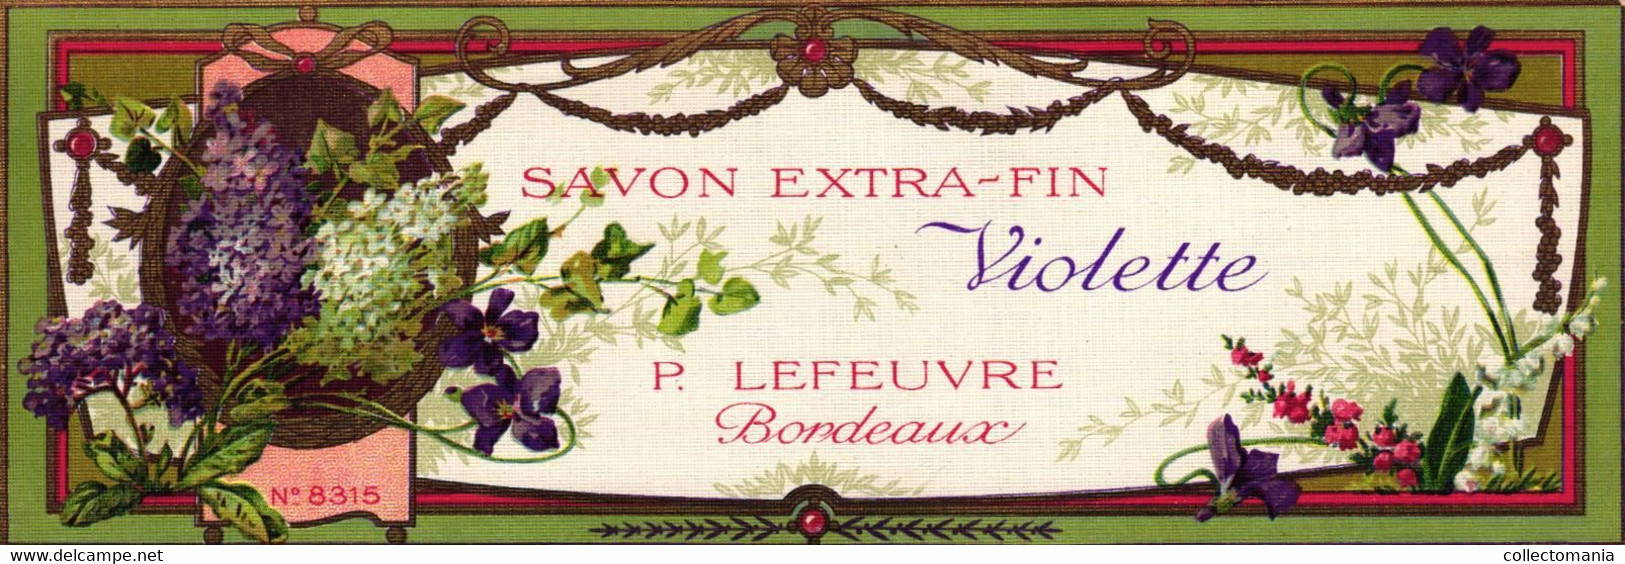 8 Etiquettes de Savon Miradol Lefeuvre Violette Persanes   Paul Tranoy  Gallin Martel Remy Goudron de Norwège